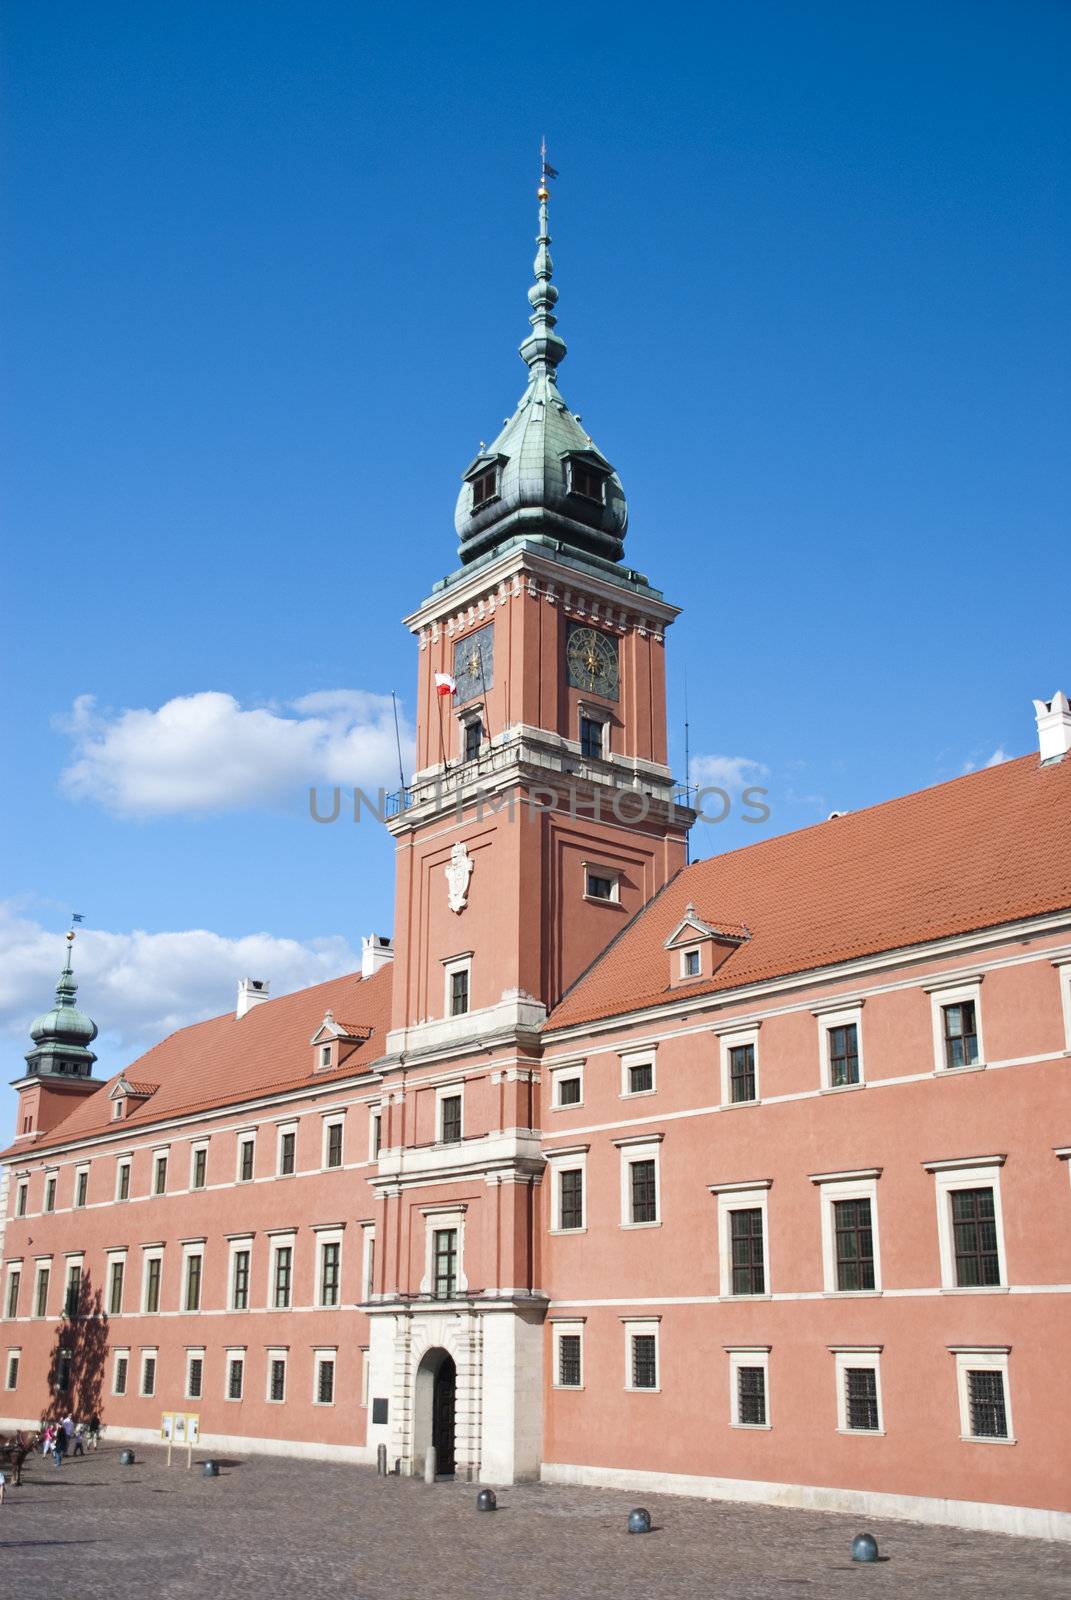 The clocktower of the Royal Palac  by wojciechkozlowski